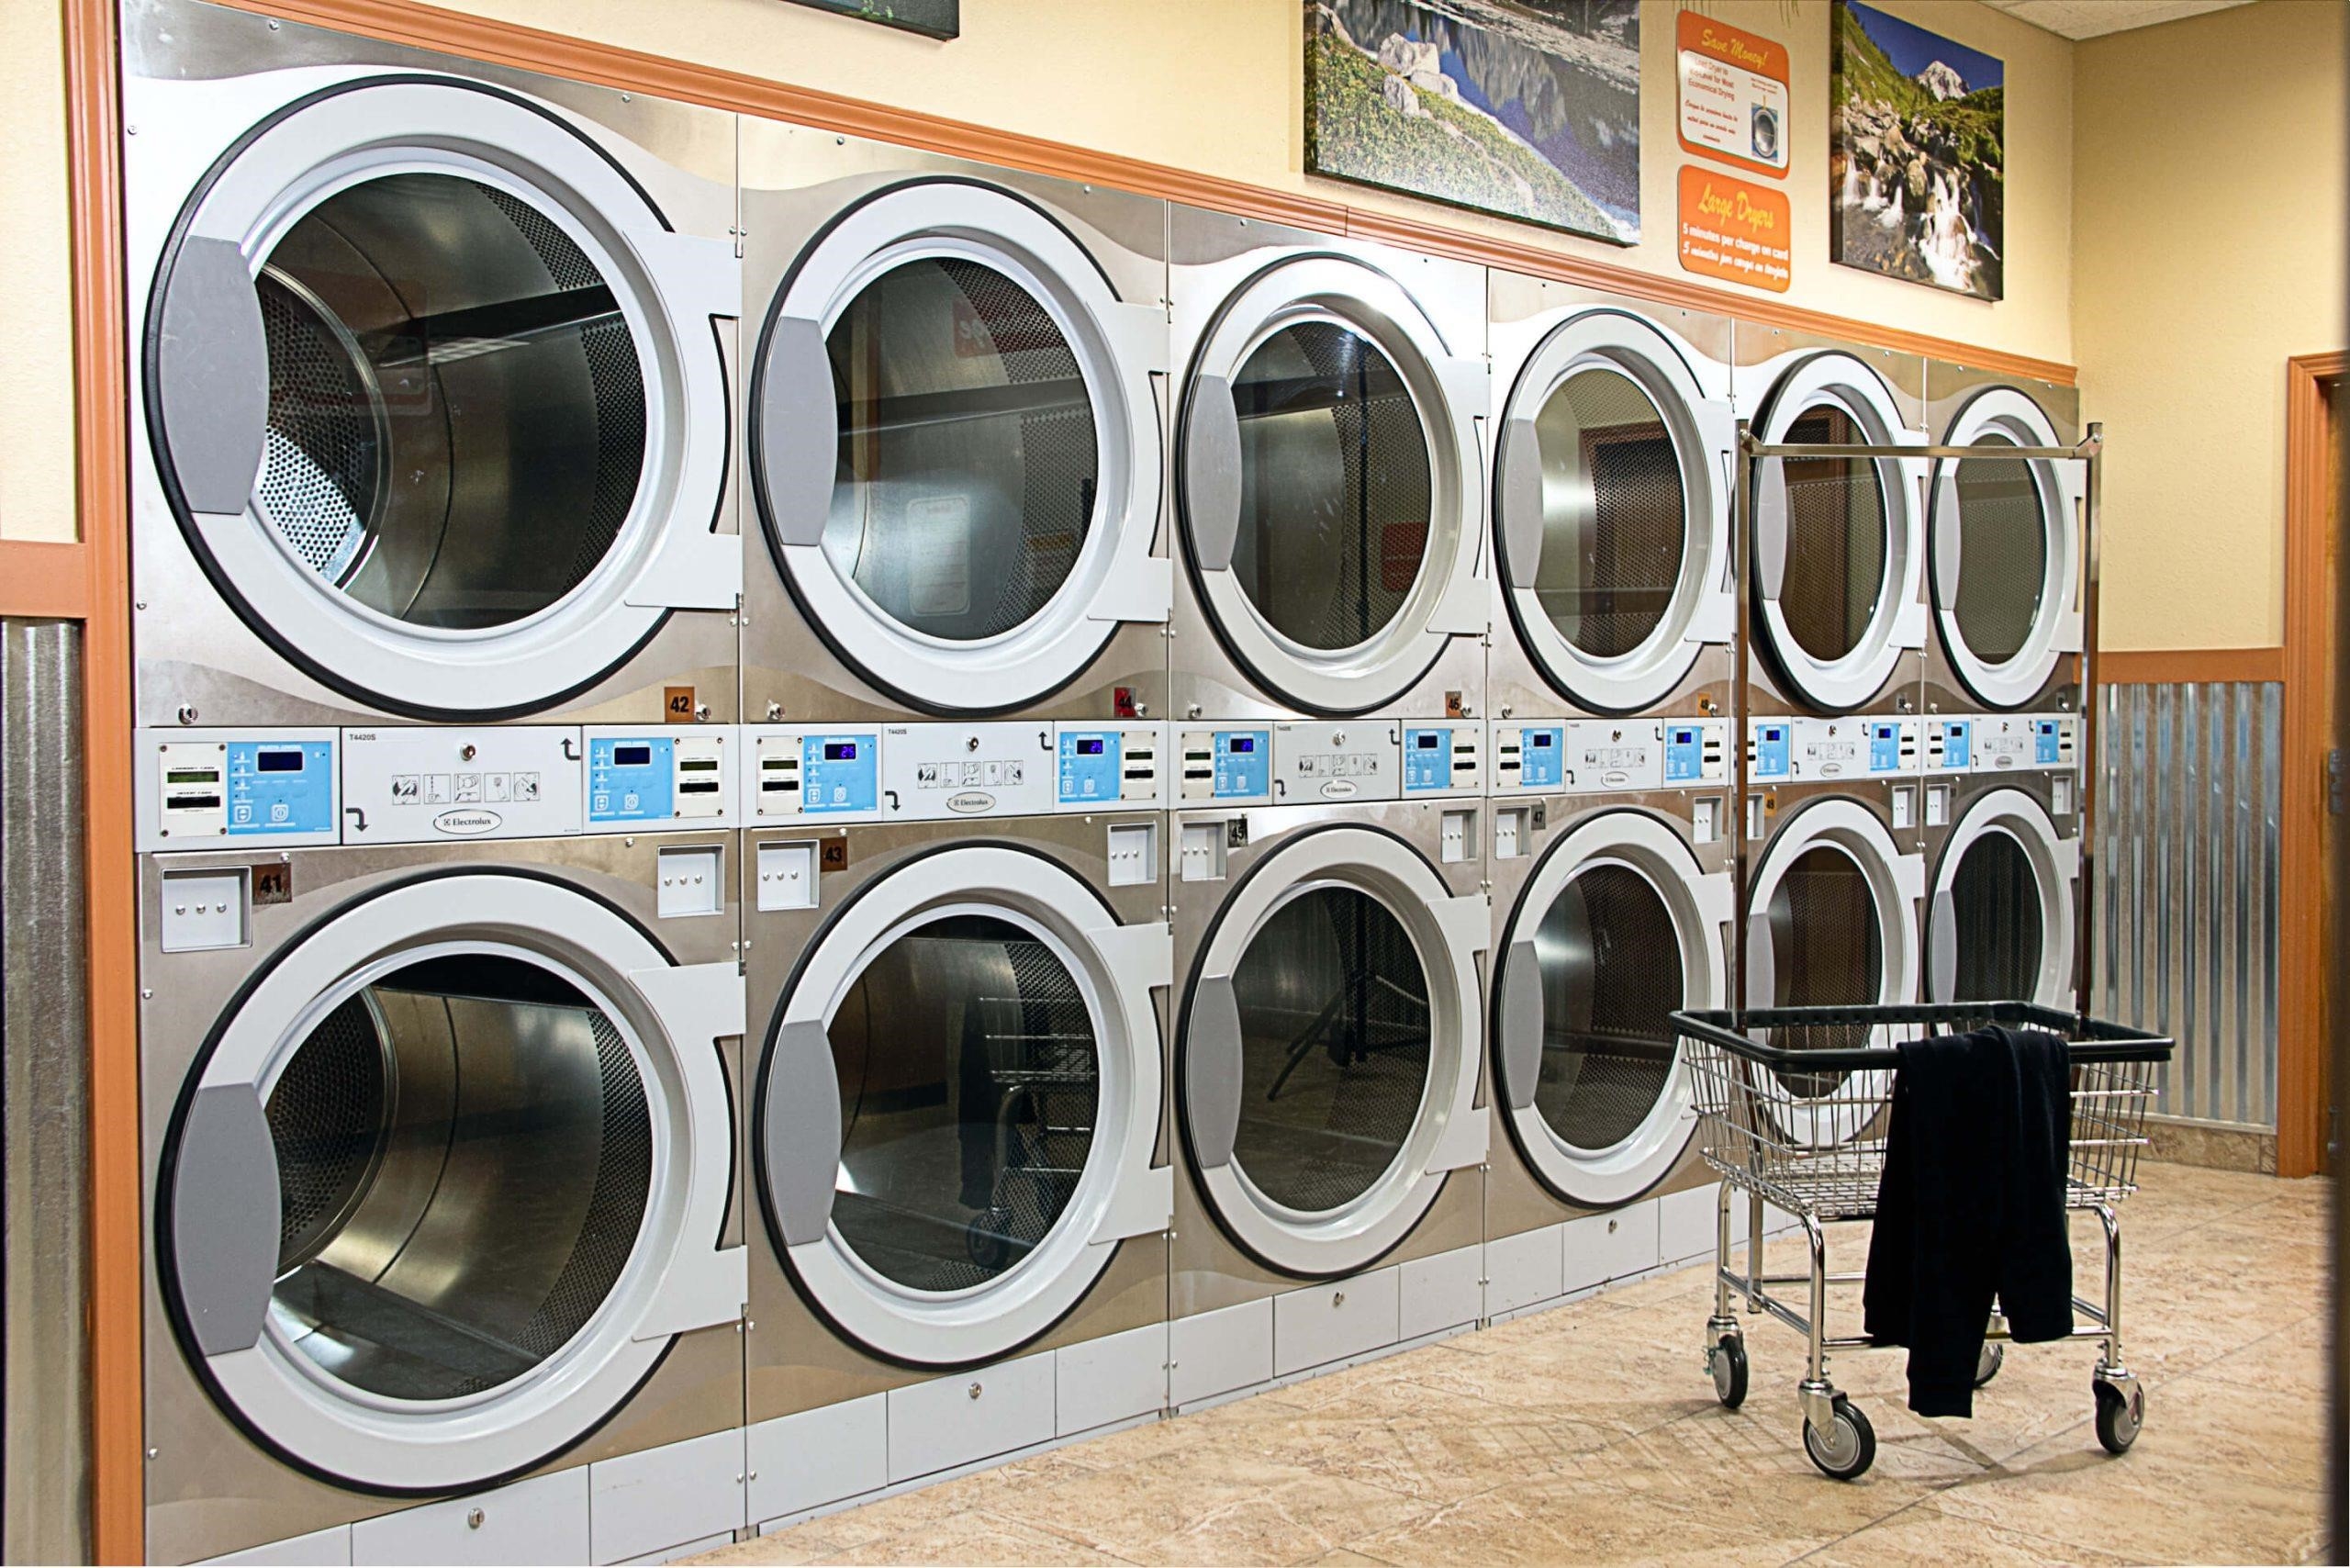 Kinh nghiệm mở tiệm giặt ủi: Chú ý quản lý và lựa chọn máy giặt